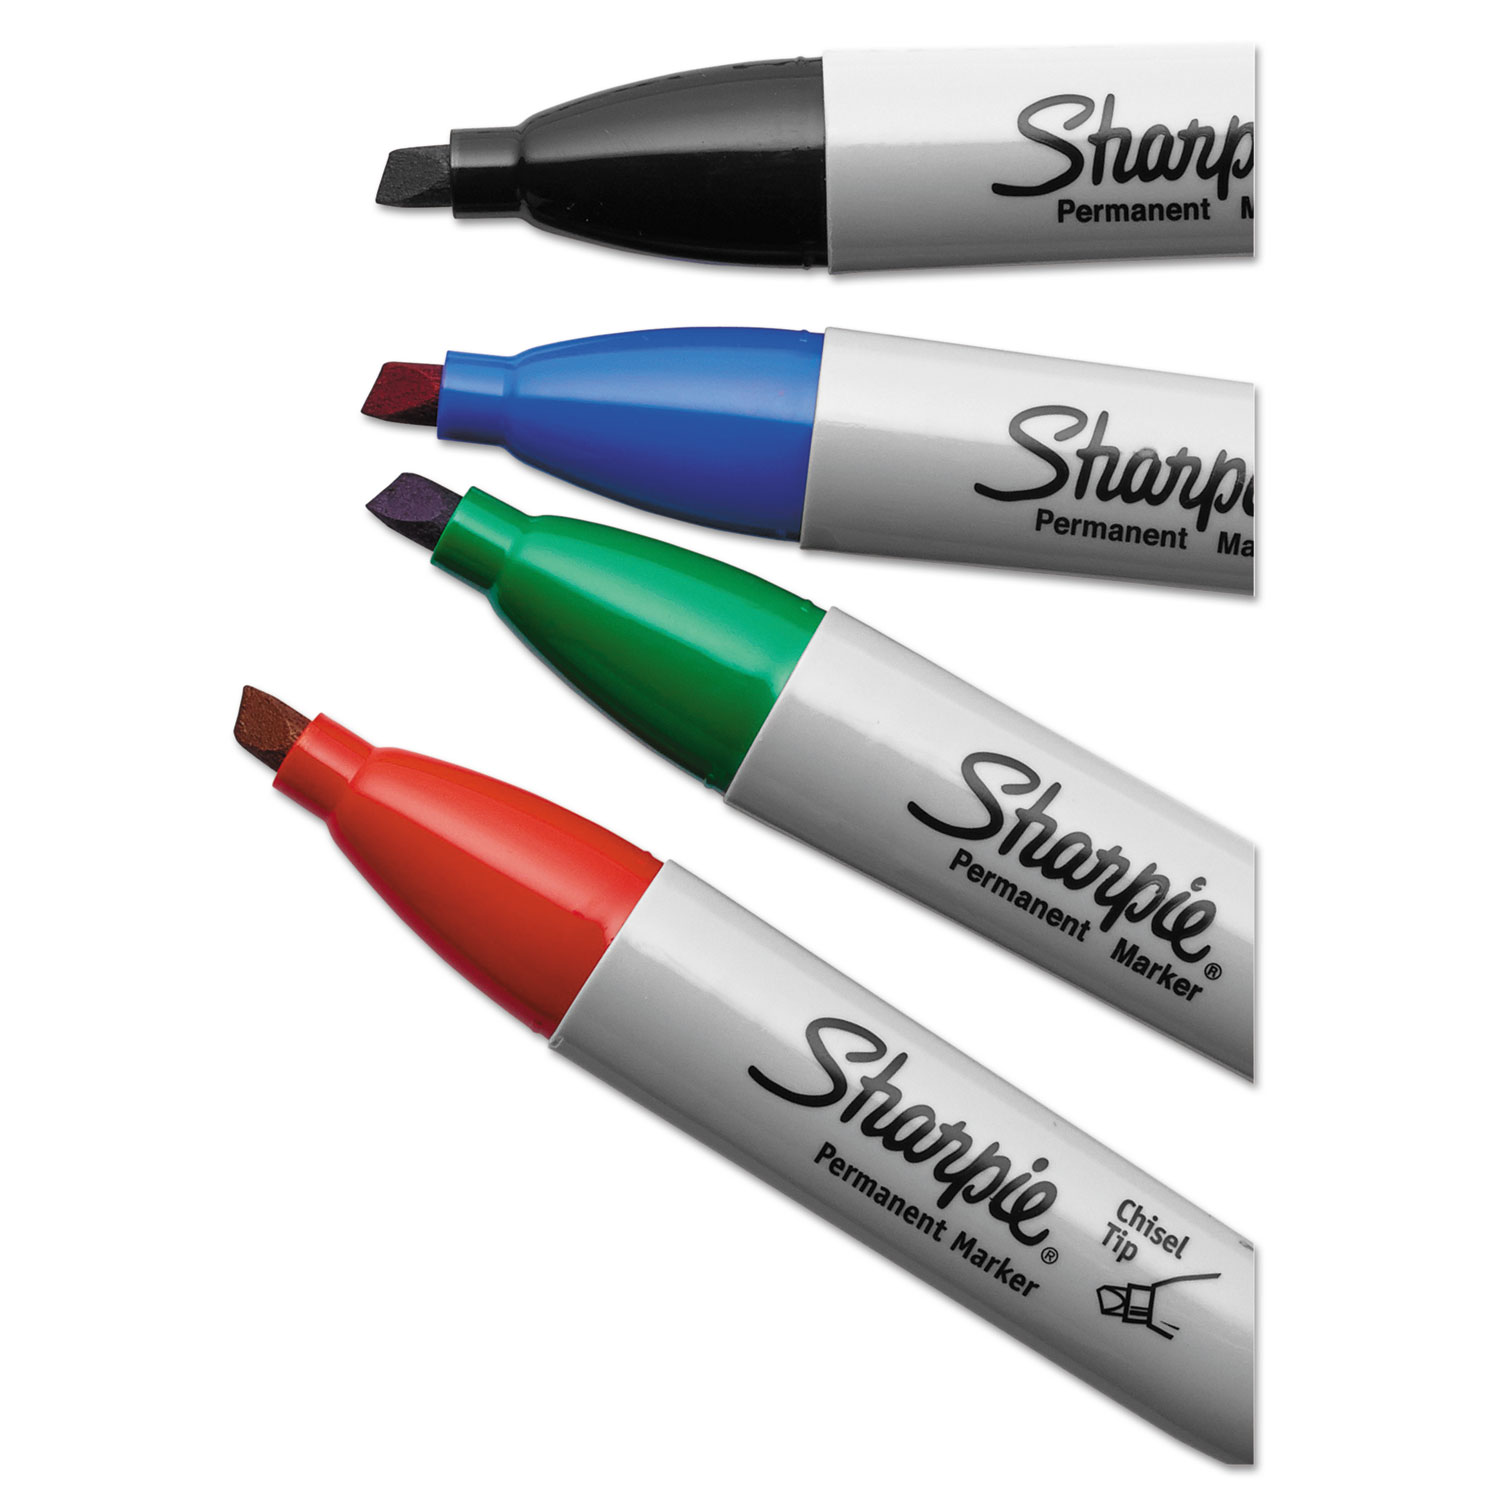 Sharpie, SAN38202, Large Barrel Permanent Markers, 1 Dozen